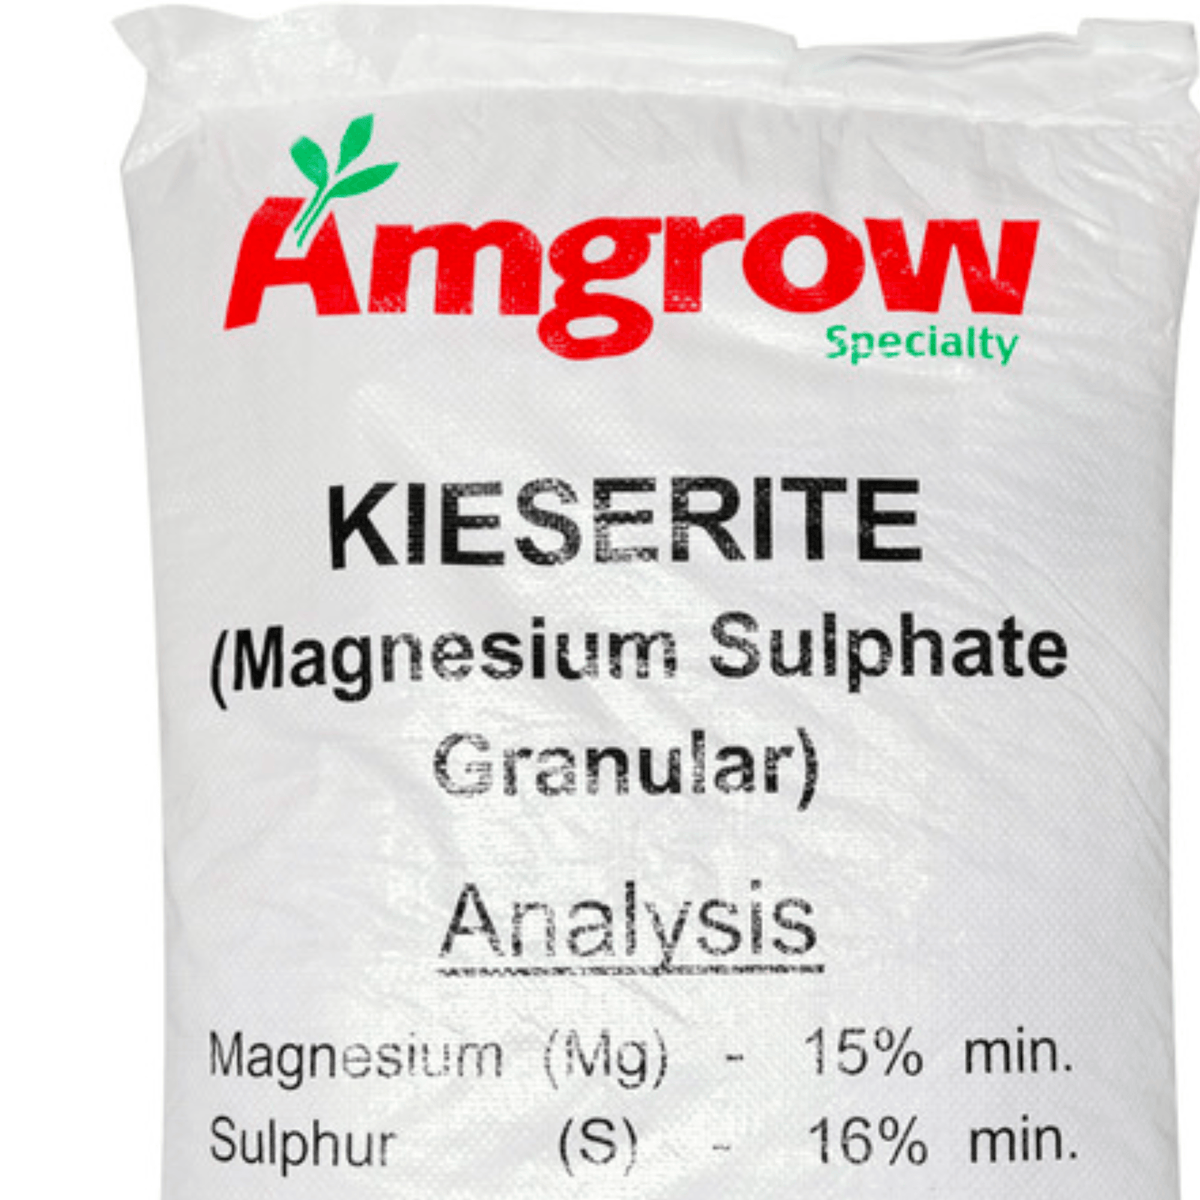 Kieserite Granular Magnesium Sulphate Fertiliser 500g - Rare Dragon Fruit